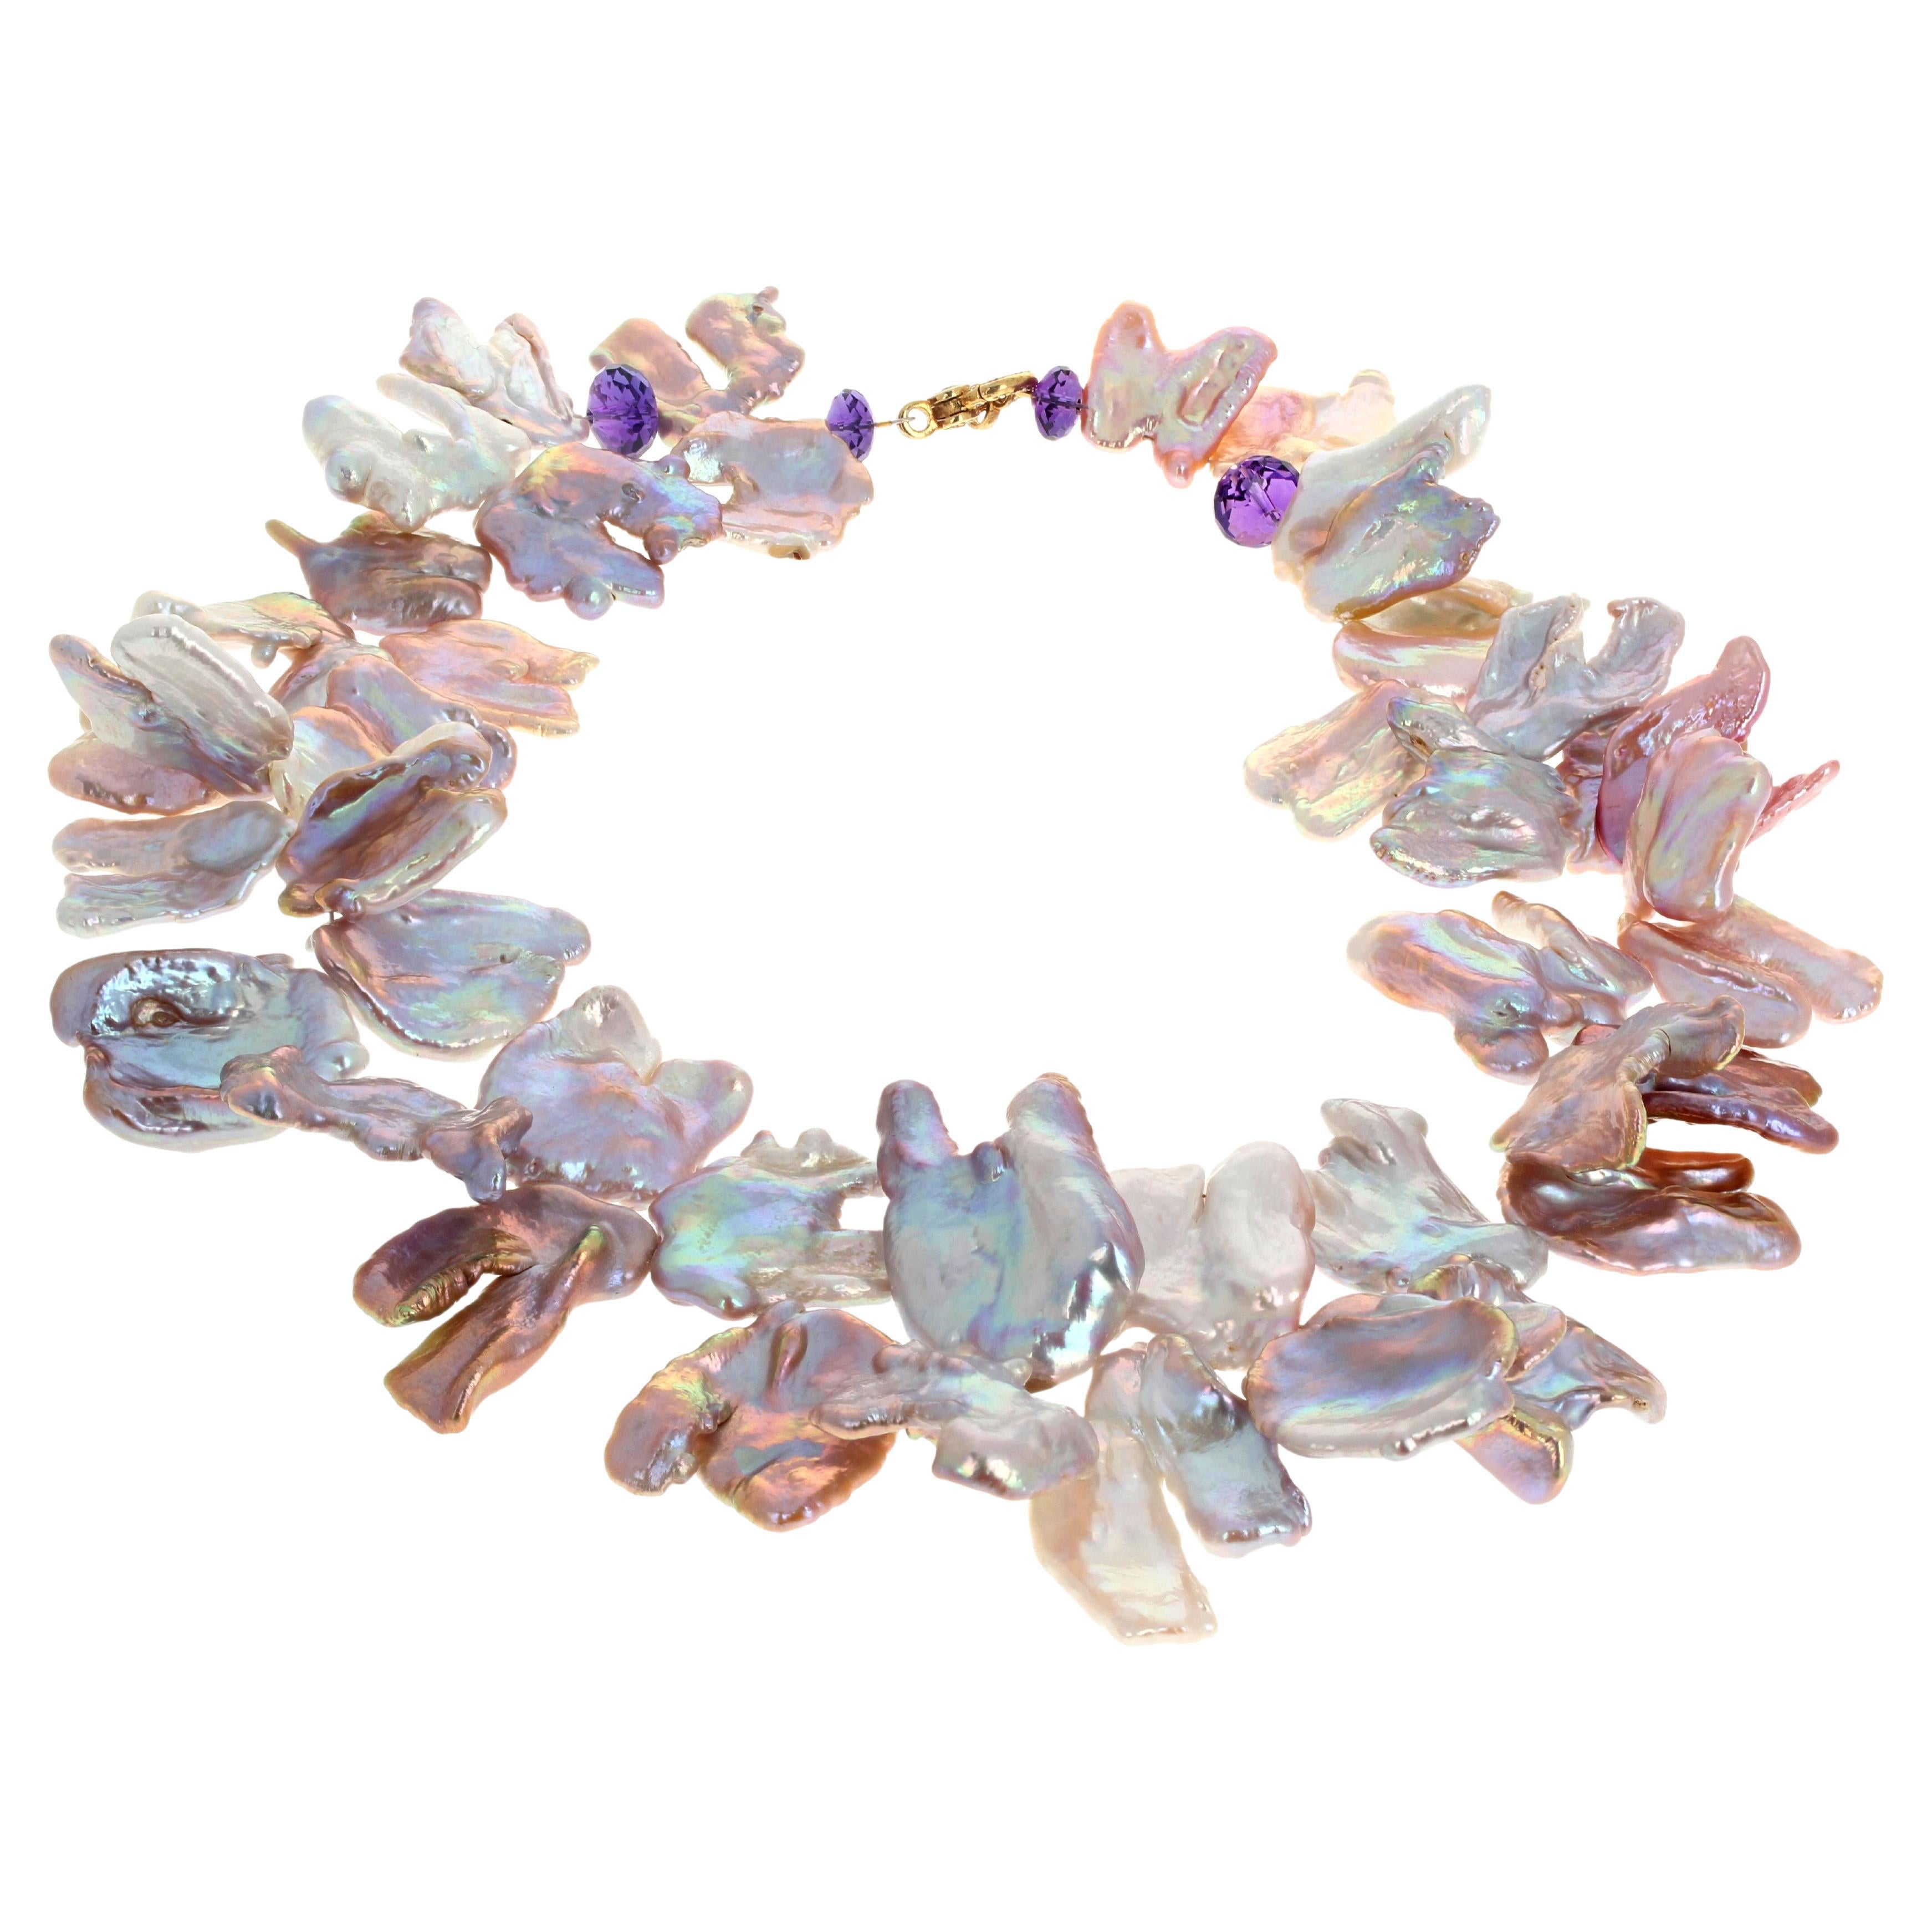 Riesige Flipfloppy-Perlen mit glitzernden, natürlichen Austernschalen bilden diese herrliche, 18 1/2 Zoll lange Halskette.  Die brillanten, glitzernden Farben spiegeln sich ineinander.  Die größten sind ca. 26 1/2mm x 22mm und die violetten